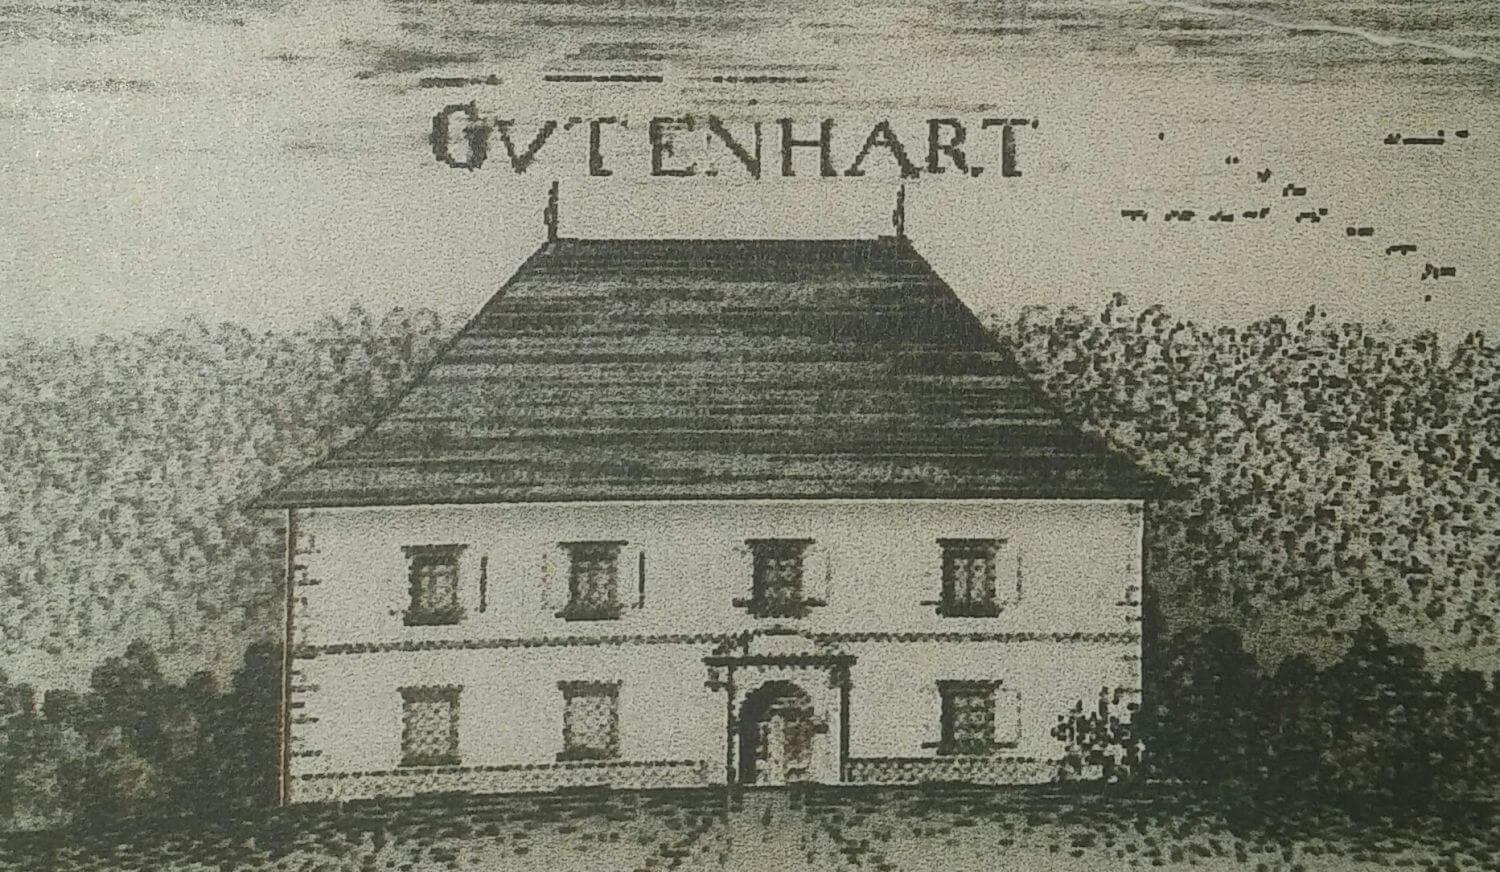 Dvorec Gutenhart / Dobrova